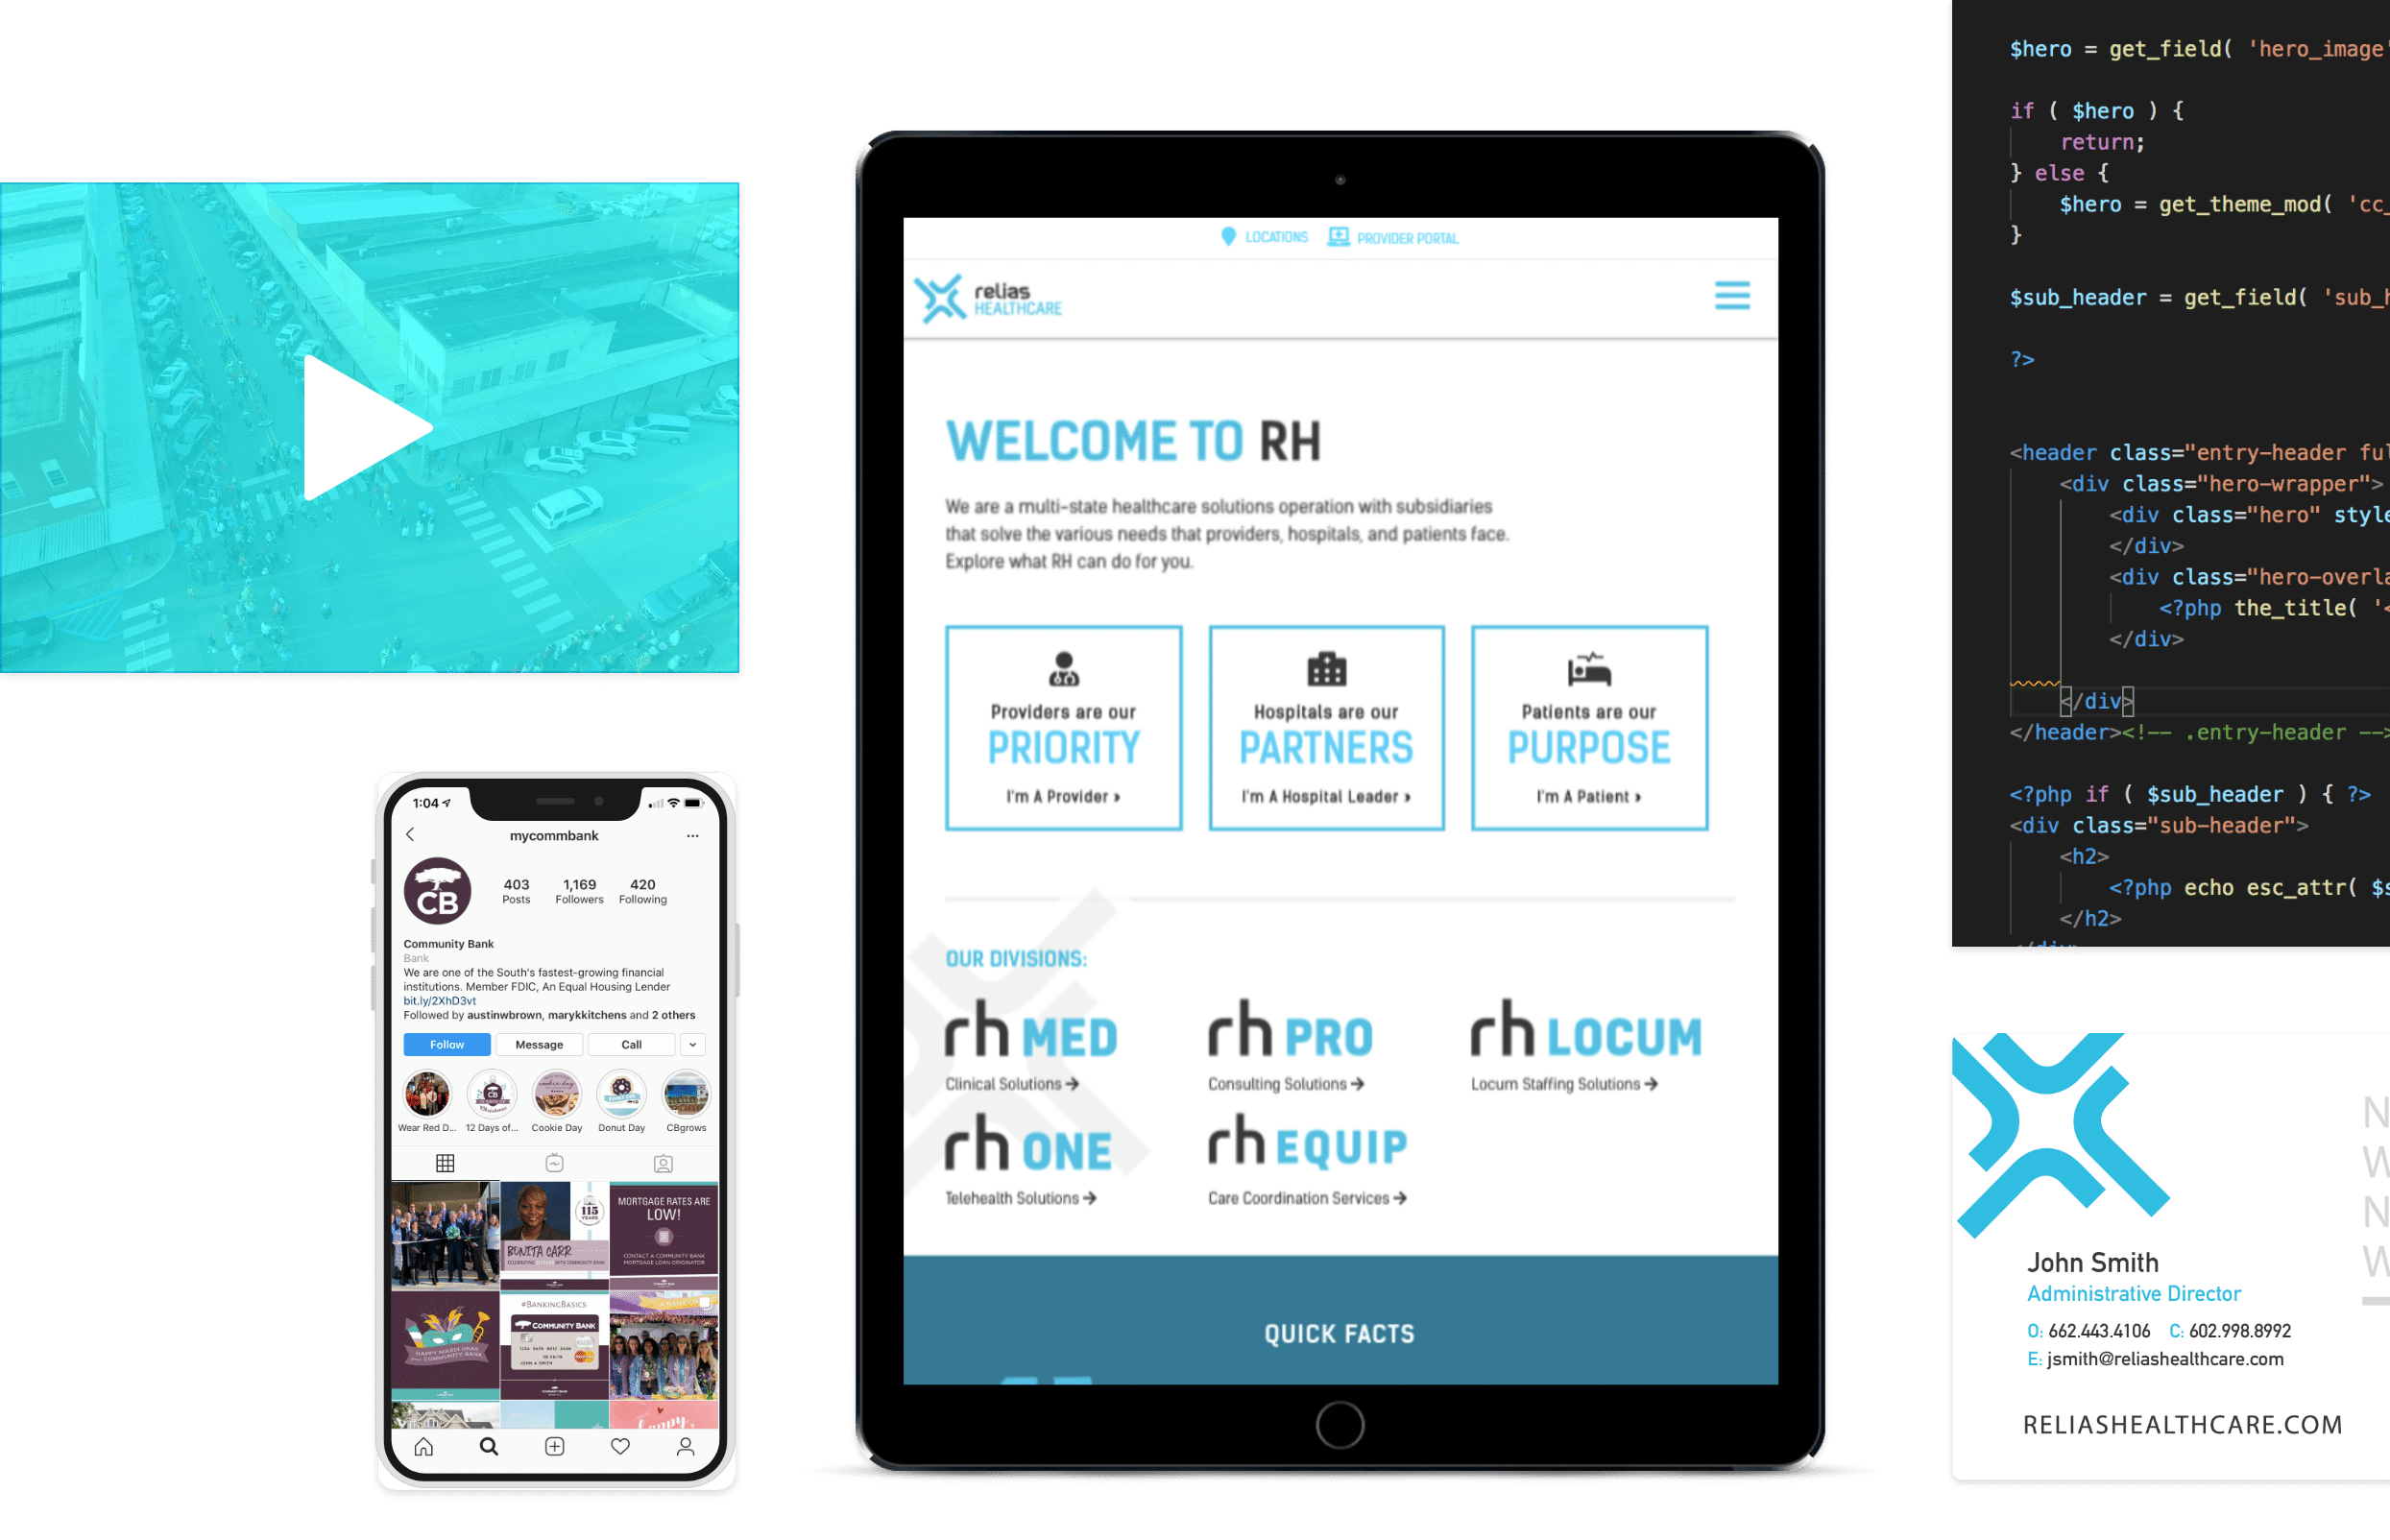 Relias Healthcare Website, Social Media, and Branding Materials